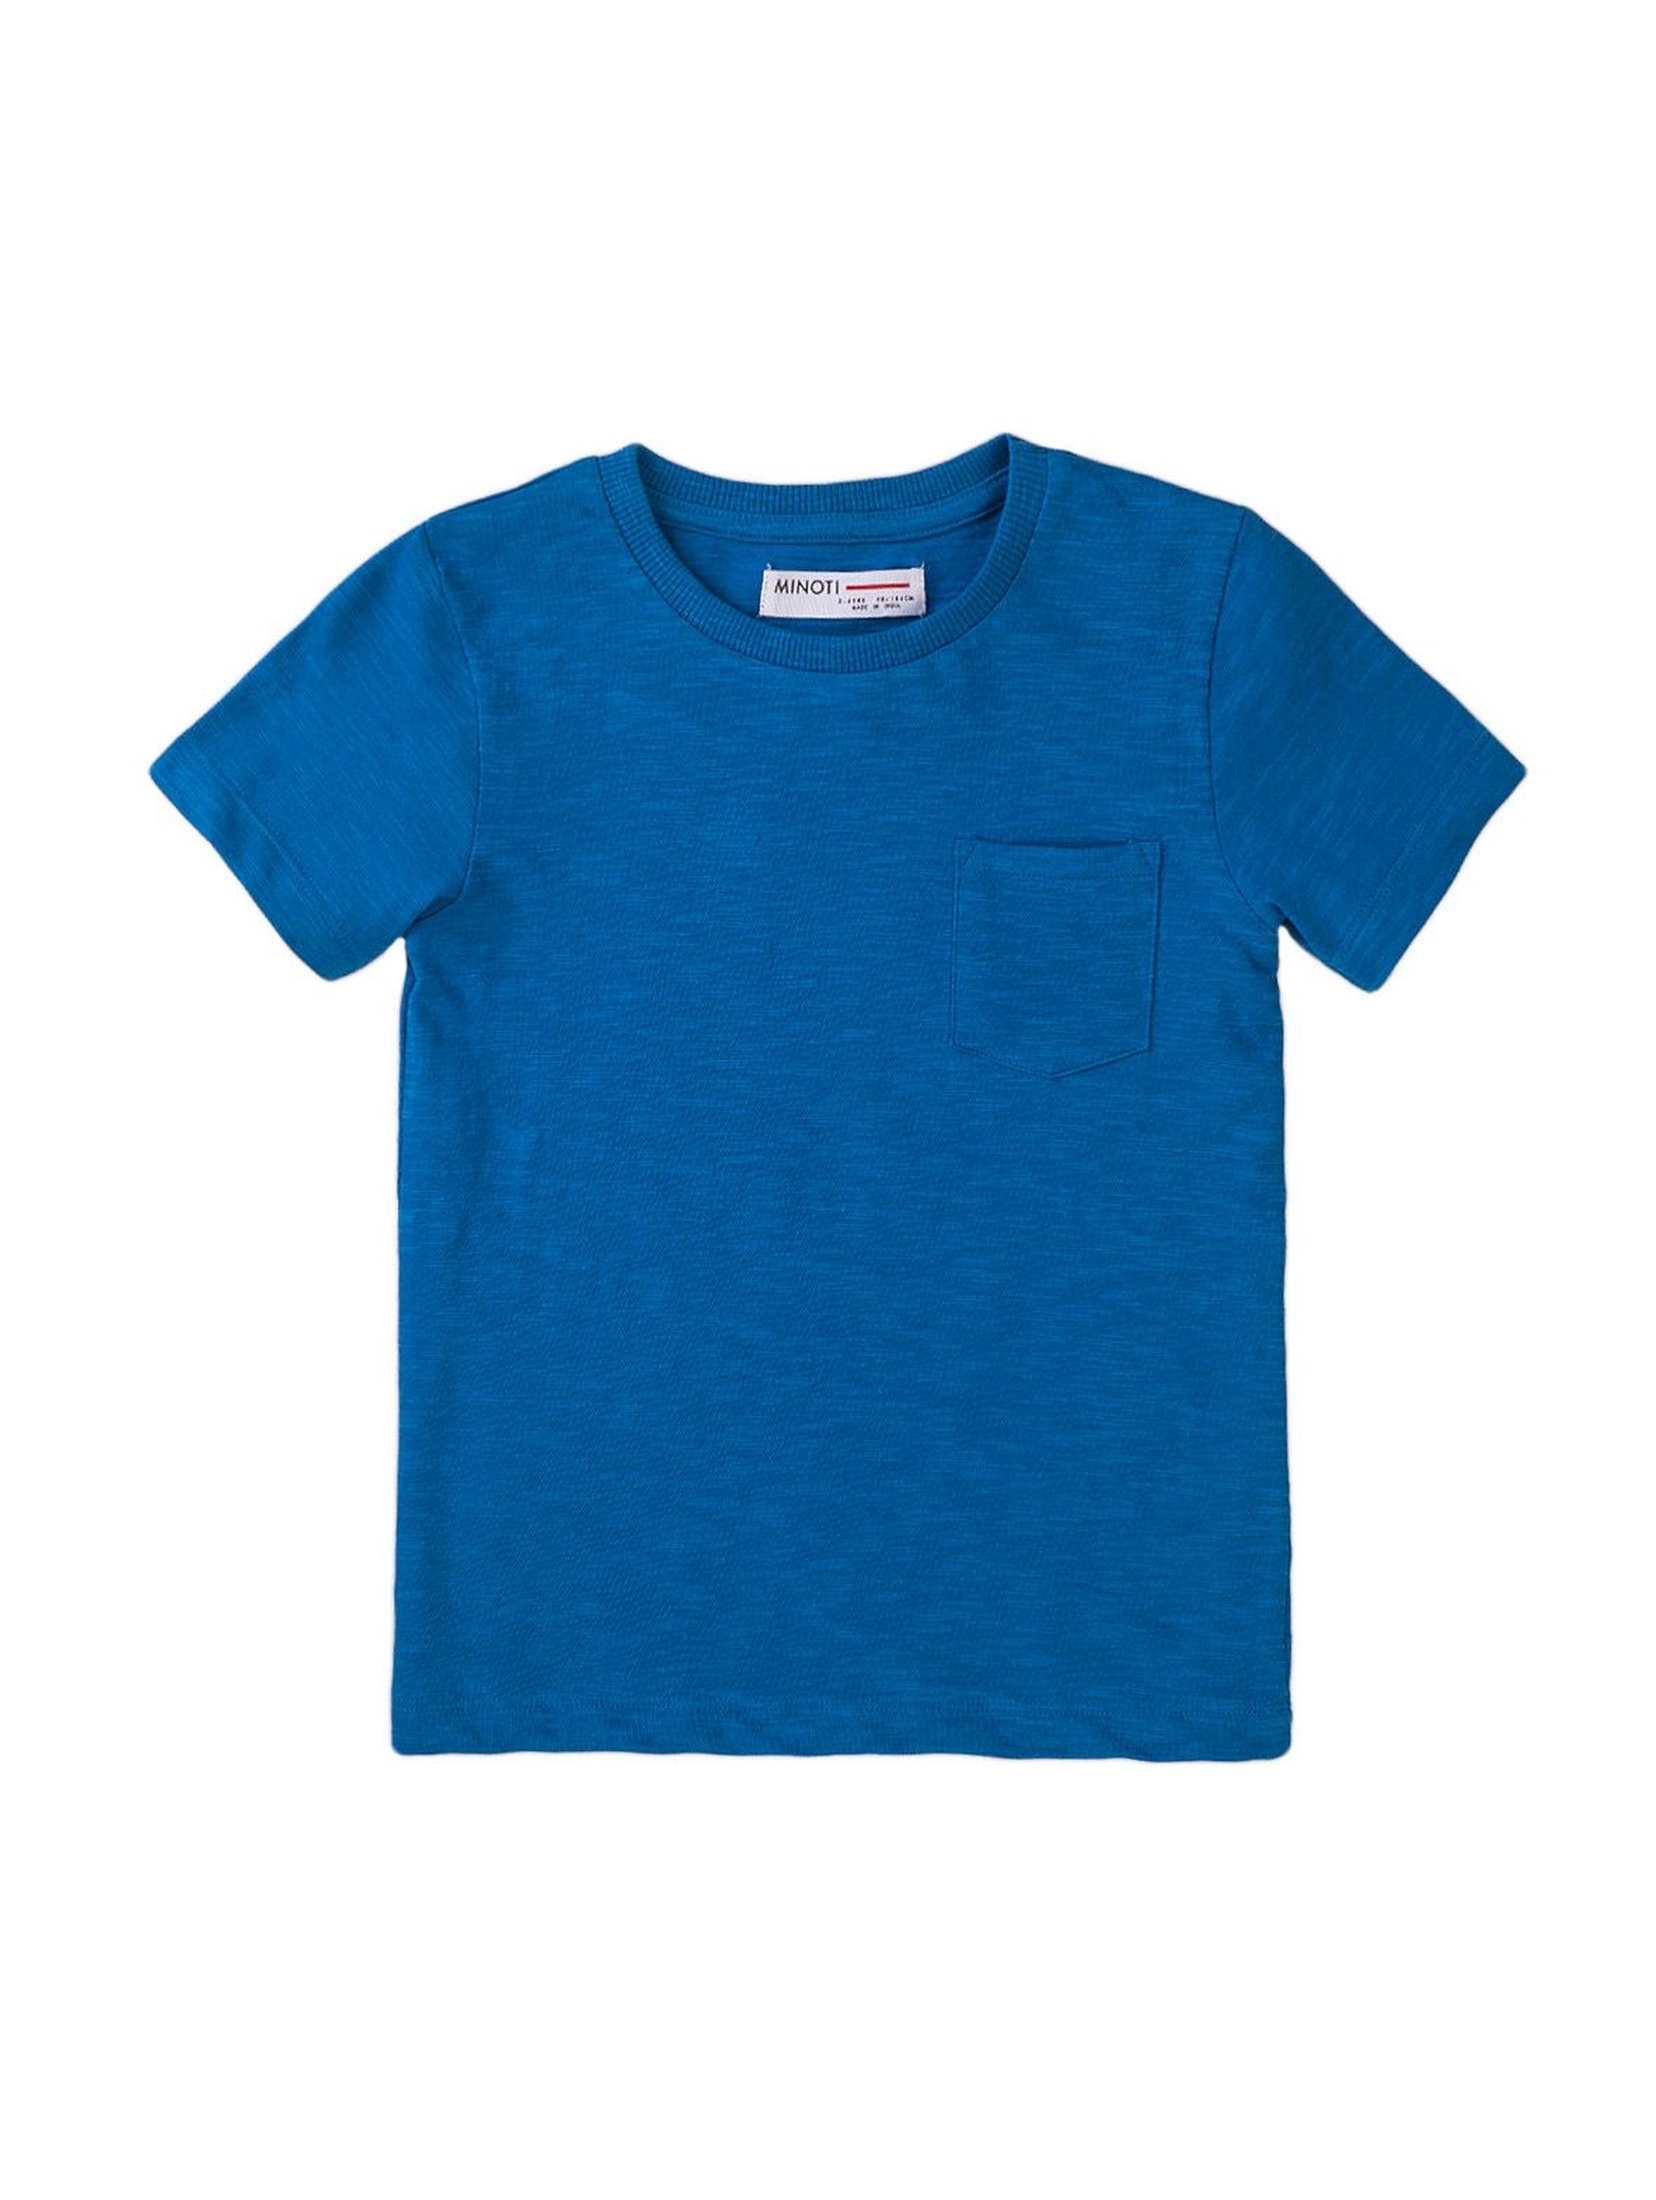 T-shirt chłopięcy bawełniany w kolorze niebieskim